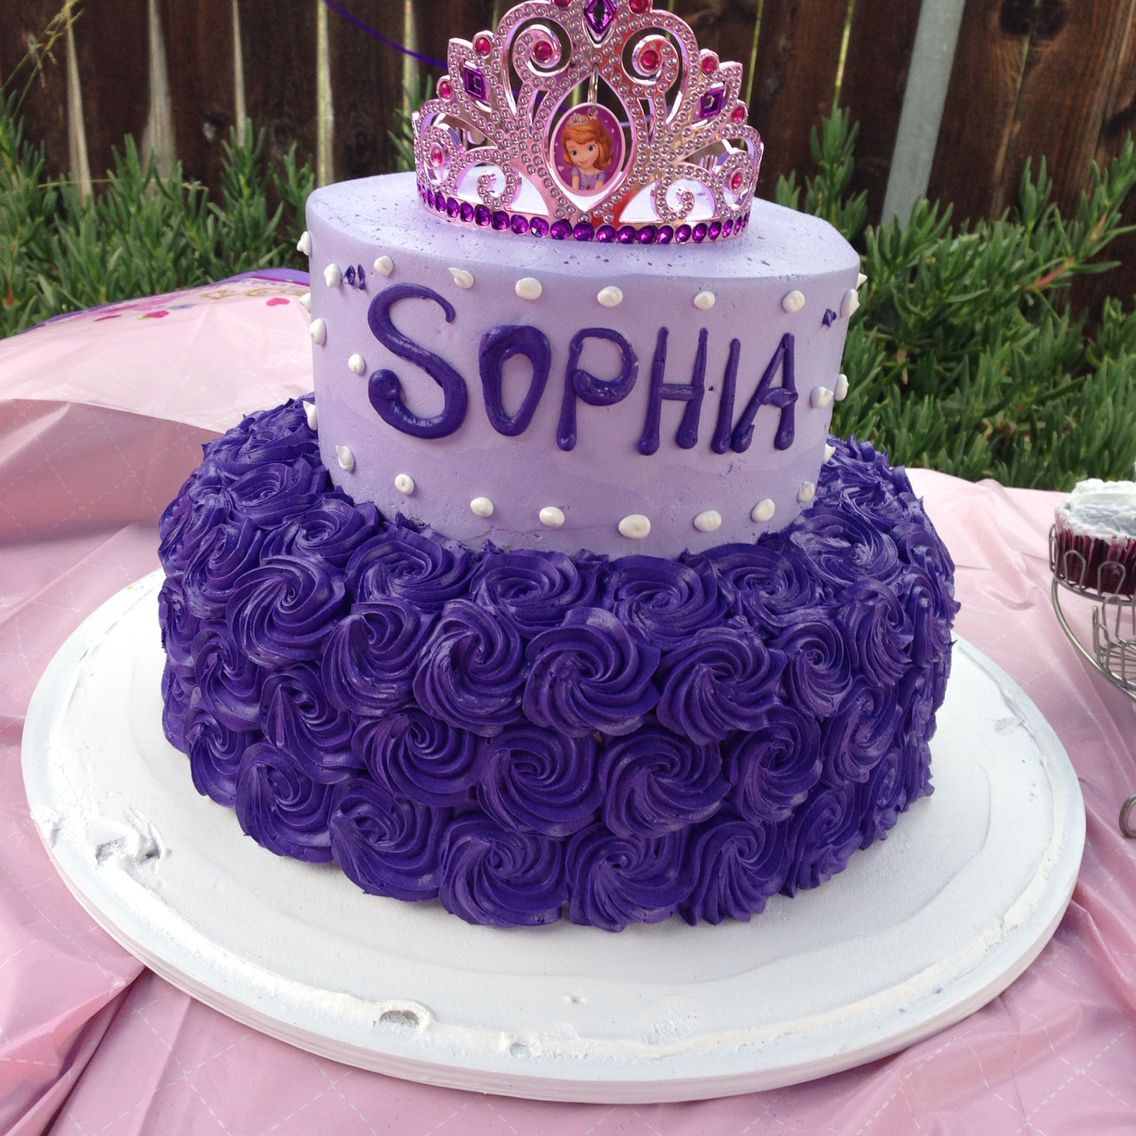 Sophia Birthday Cake
 Sophia the First cake